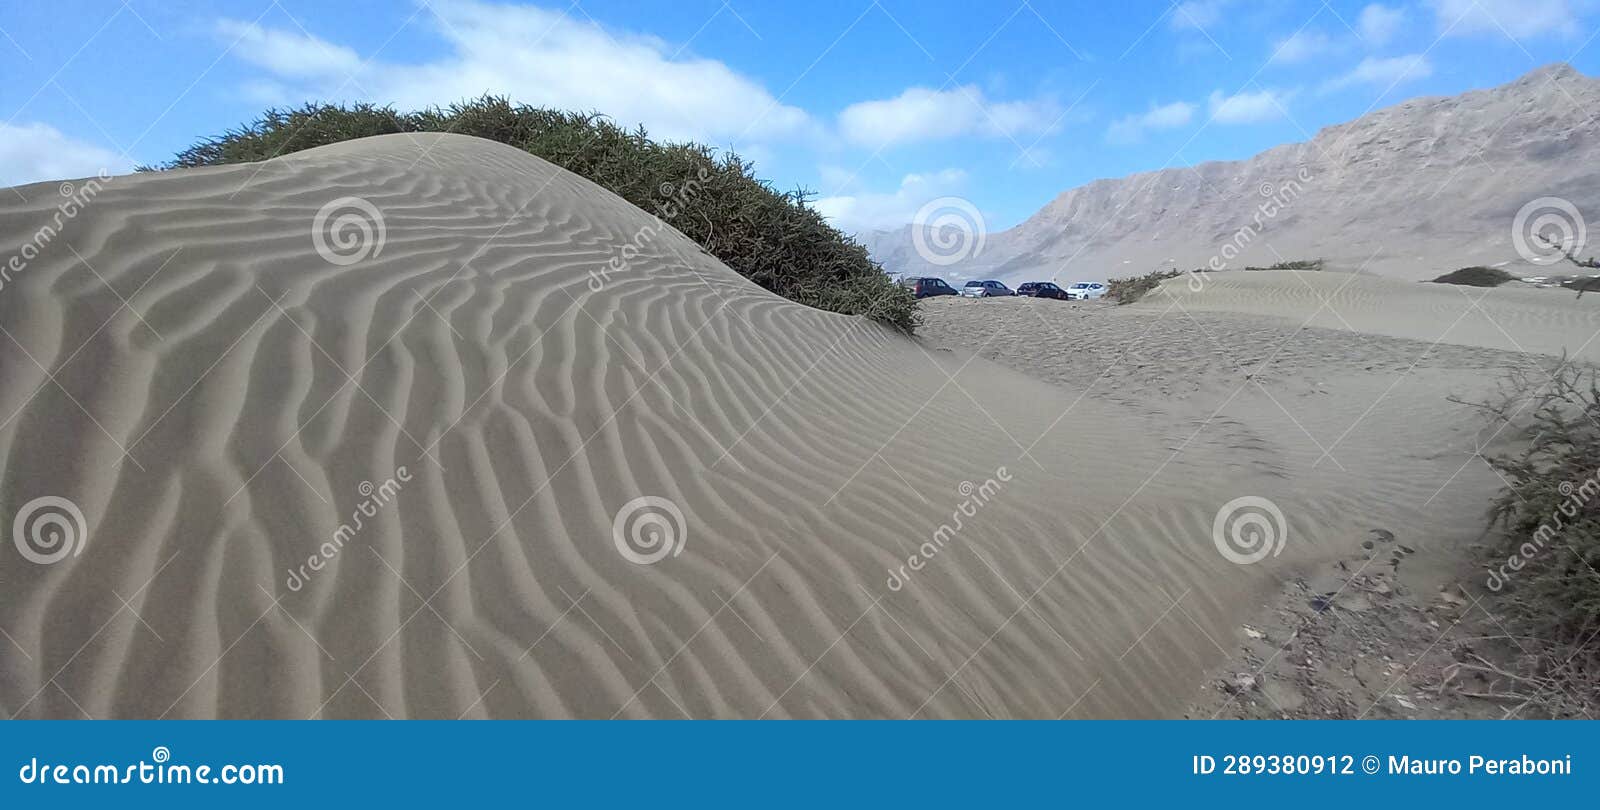 duna di finissima sabbia bianca modellata dal vento, spiaggia nelle isole canarie